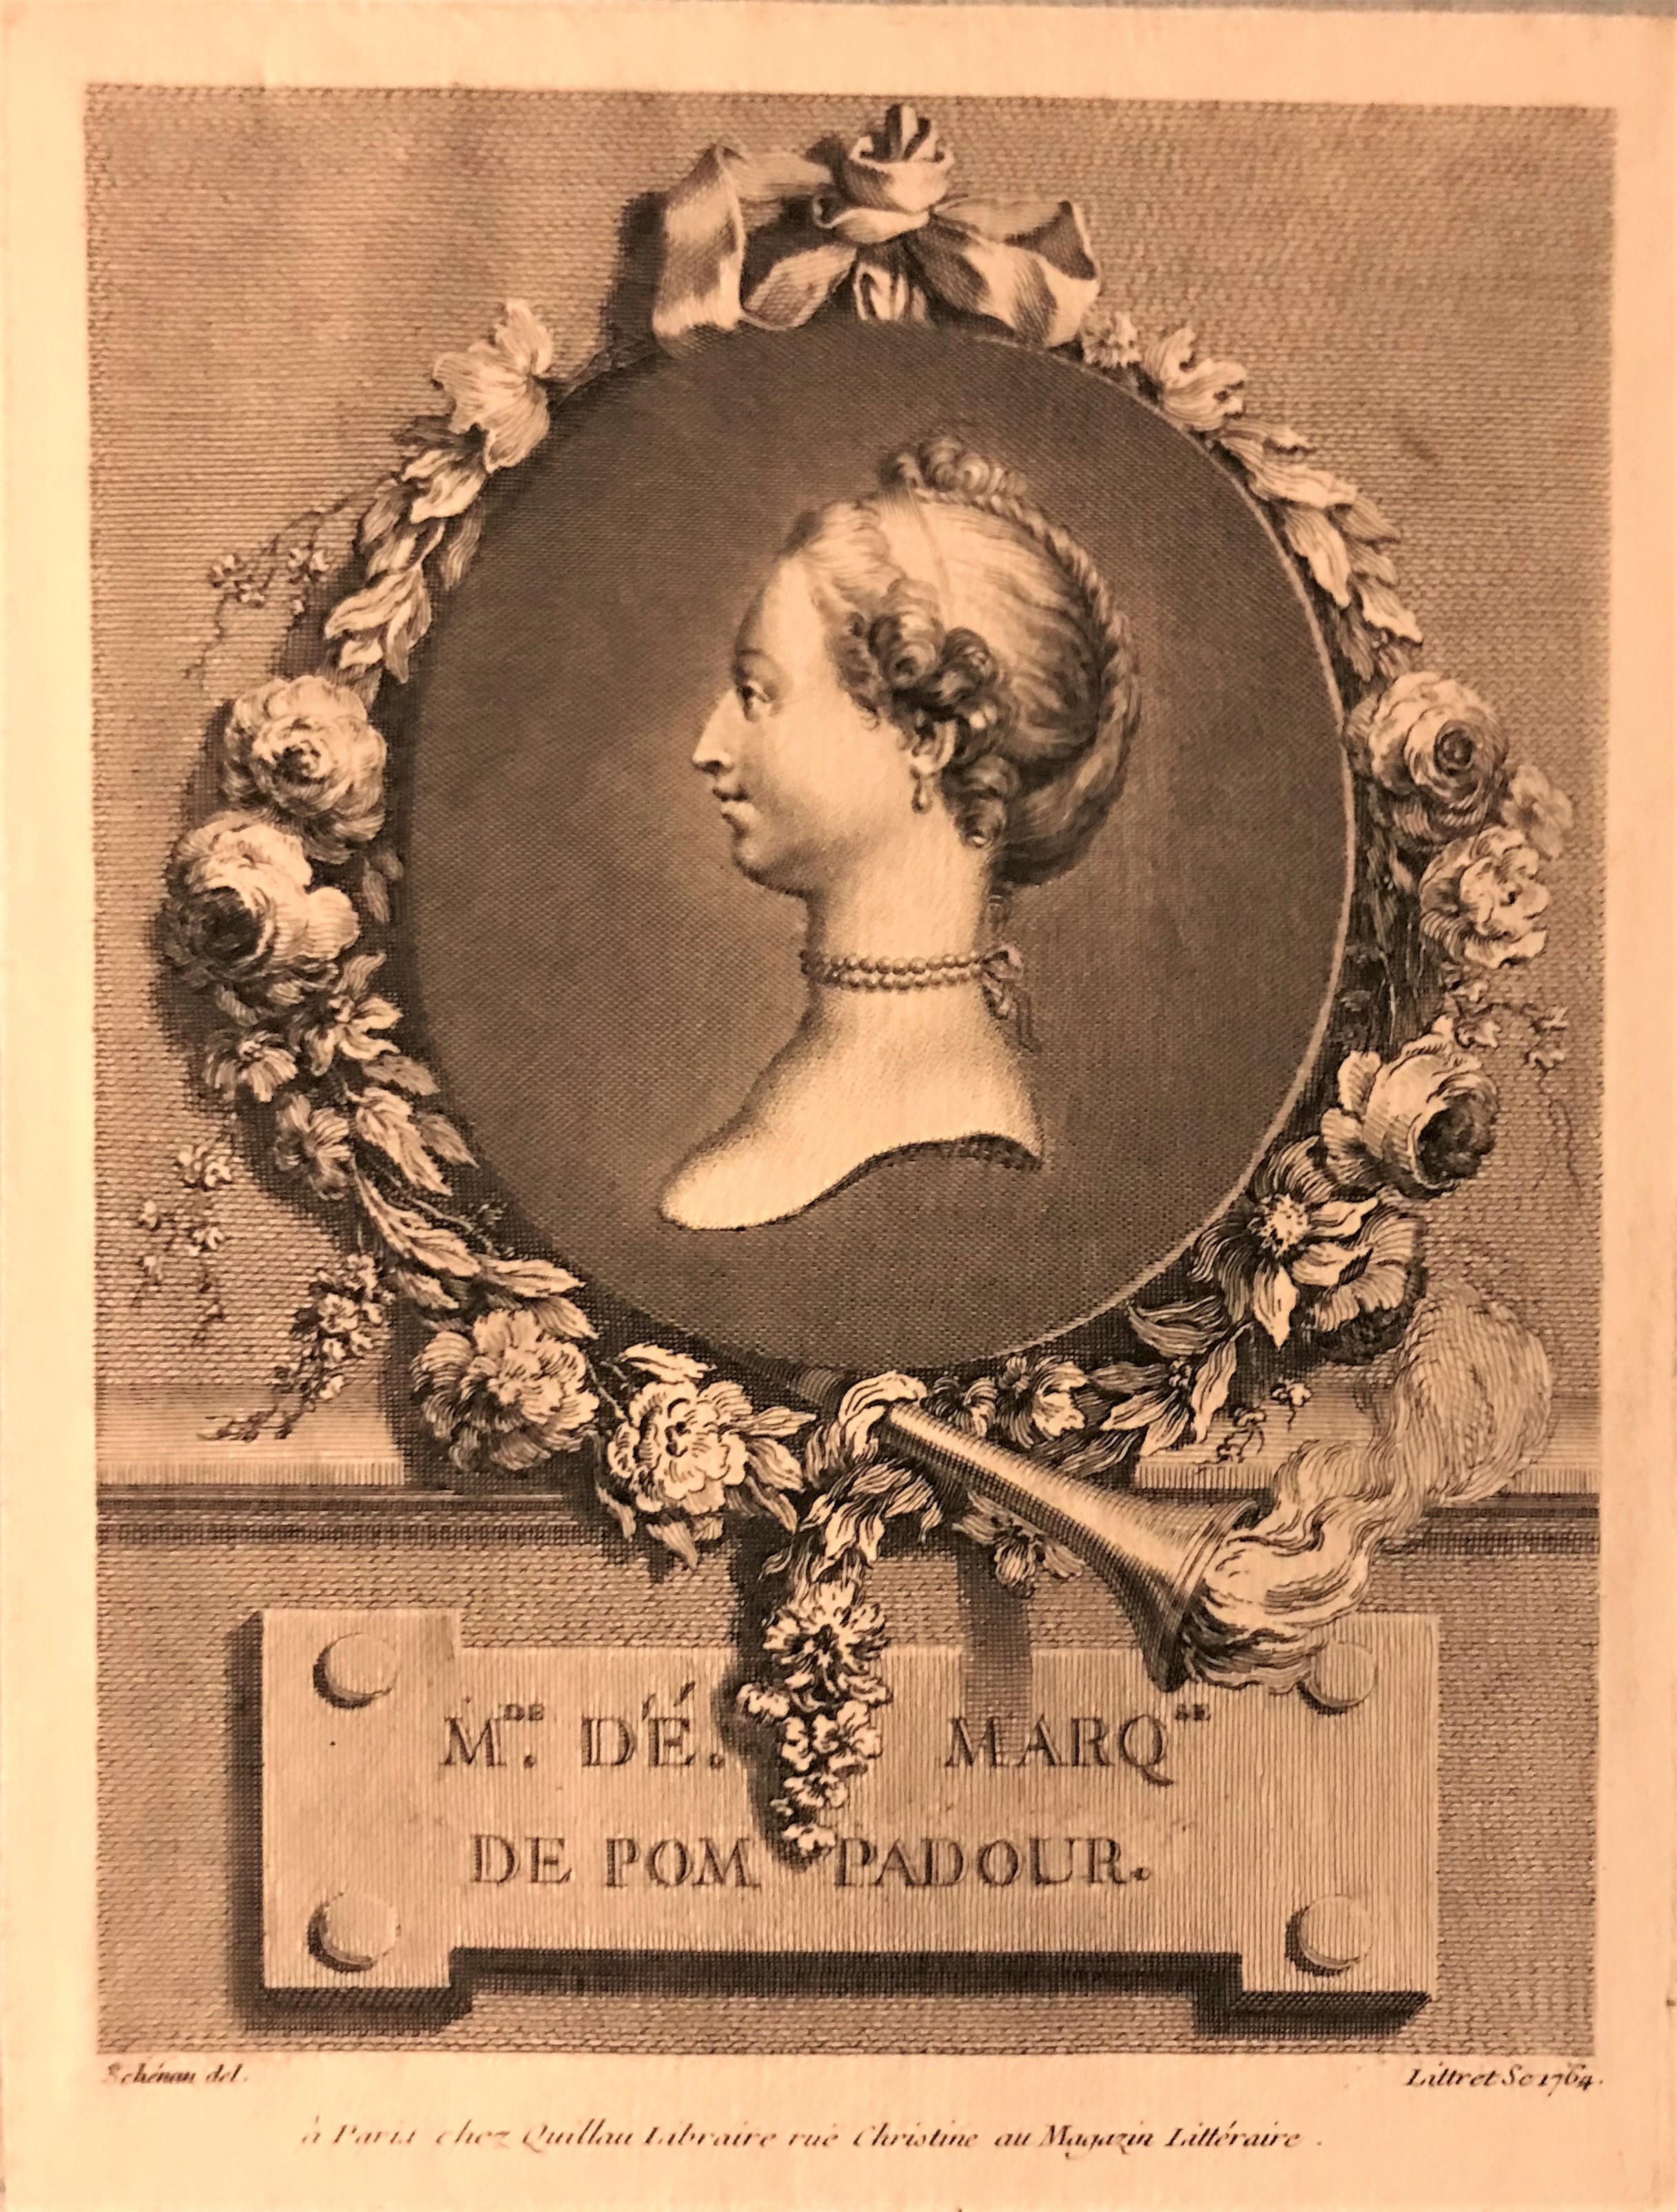 Gravyr föreställande en ung kvinna med uppsatt hår avbildad i en oval ram omgiven av blommor. Under bilden texten "Madame de Marquisae de Pompadour".